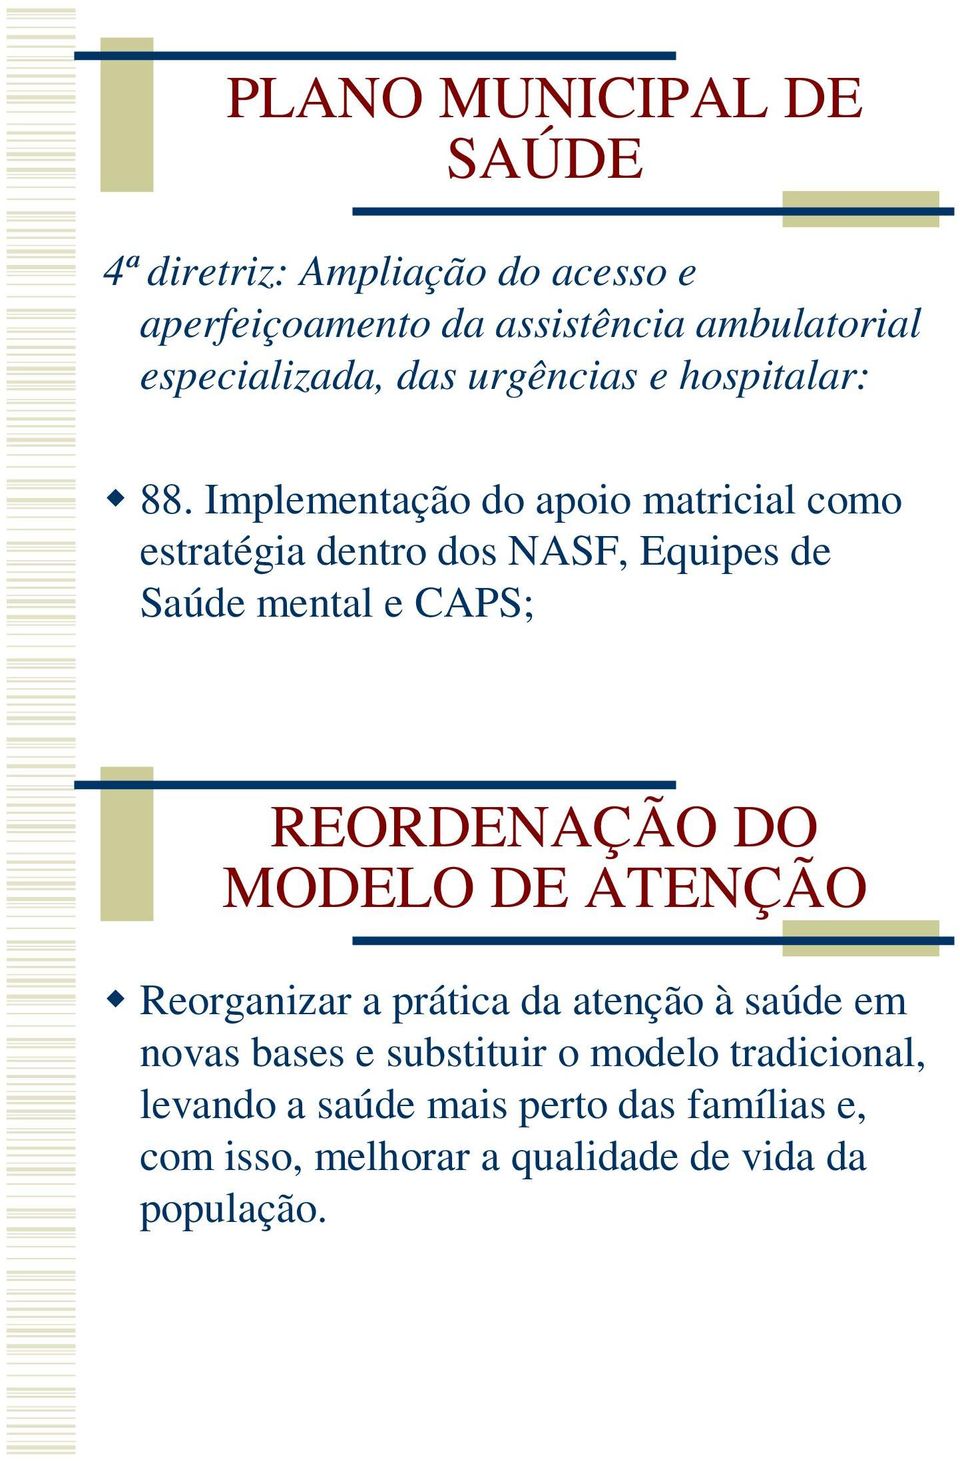 Implementação do apoio matricial como estratégia dentro dos NASF, Equipes de Saúde mental e CAPS; REORDENAÇÃO DO